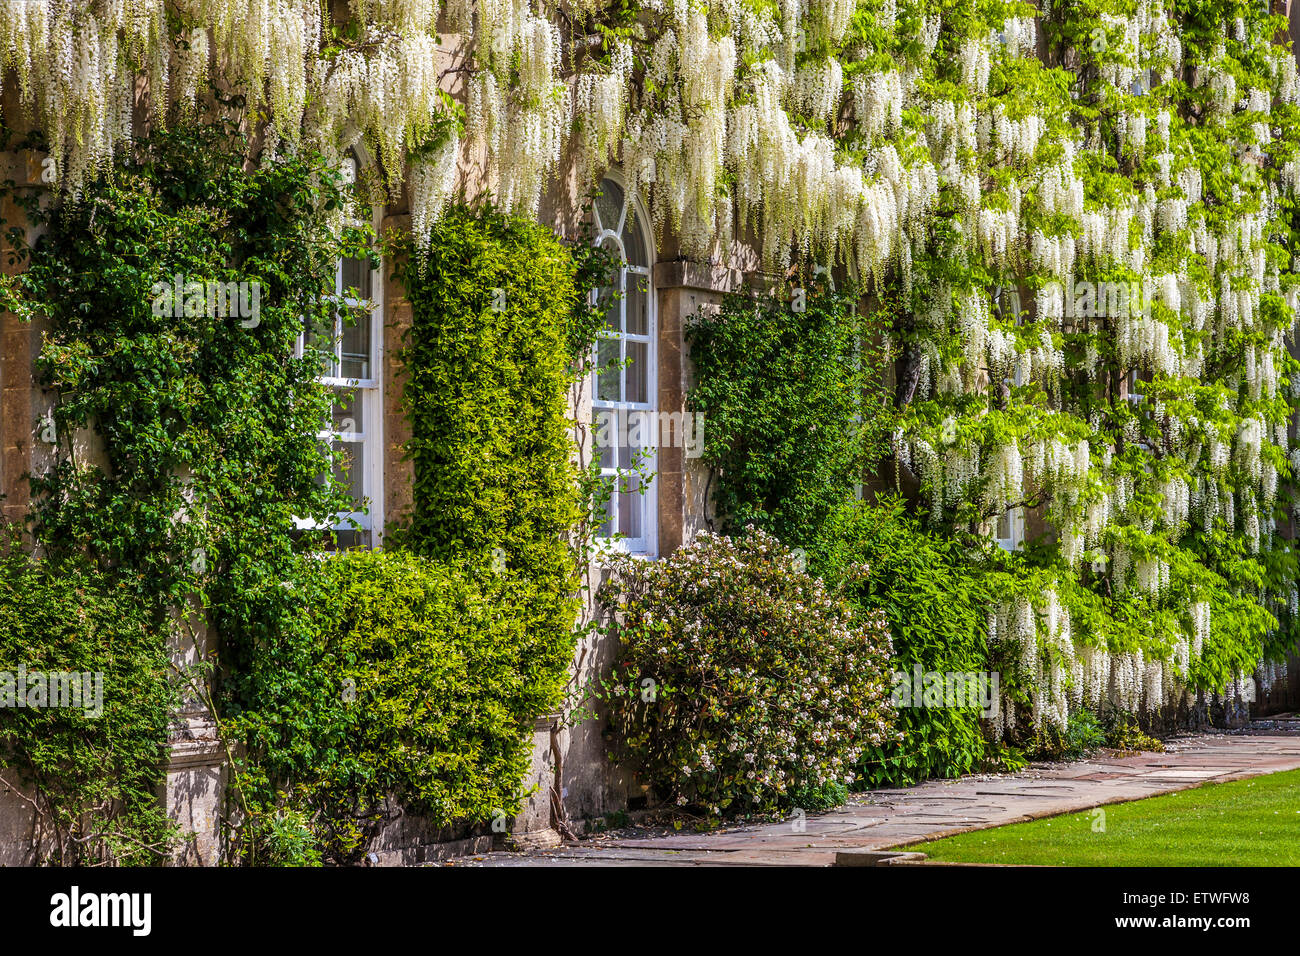 Floraison blanche wisteria sinensis chinois des environs de la fenêtres d'une demeure seigneuriale. Banque D'Images